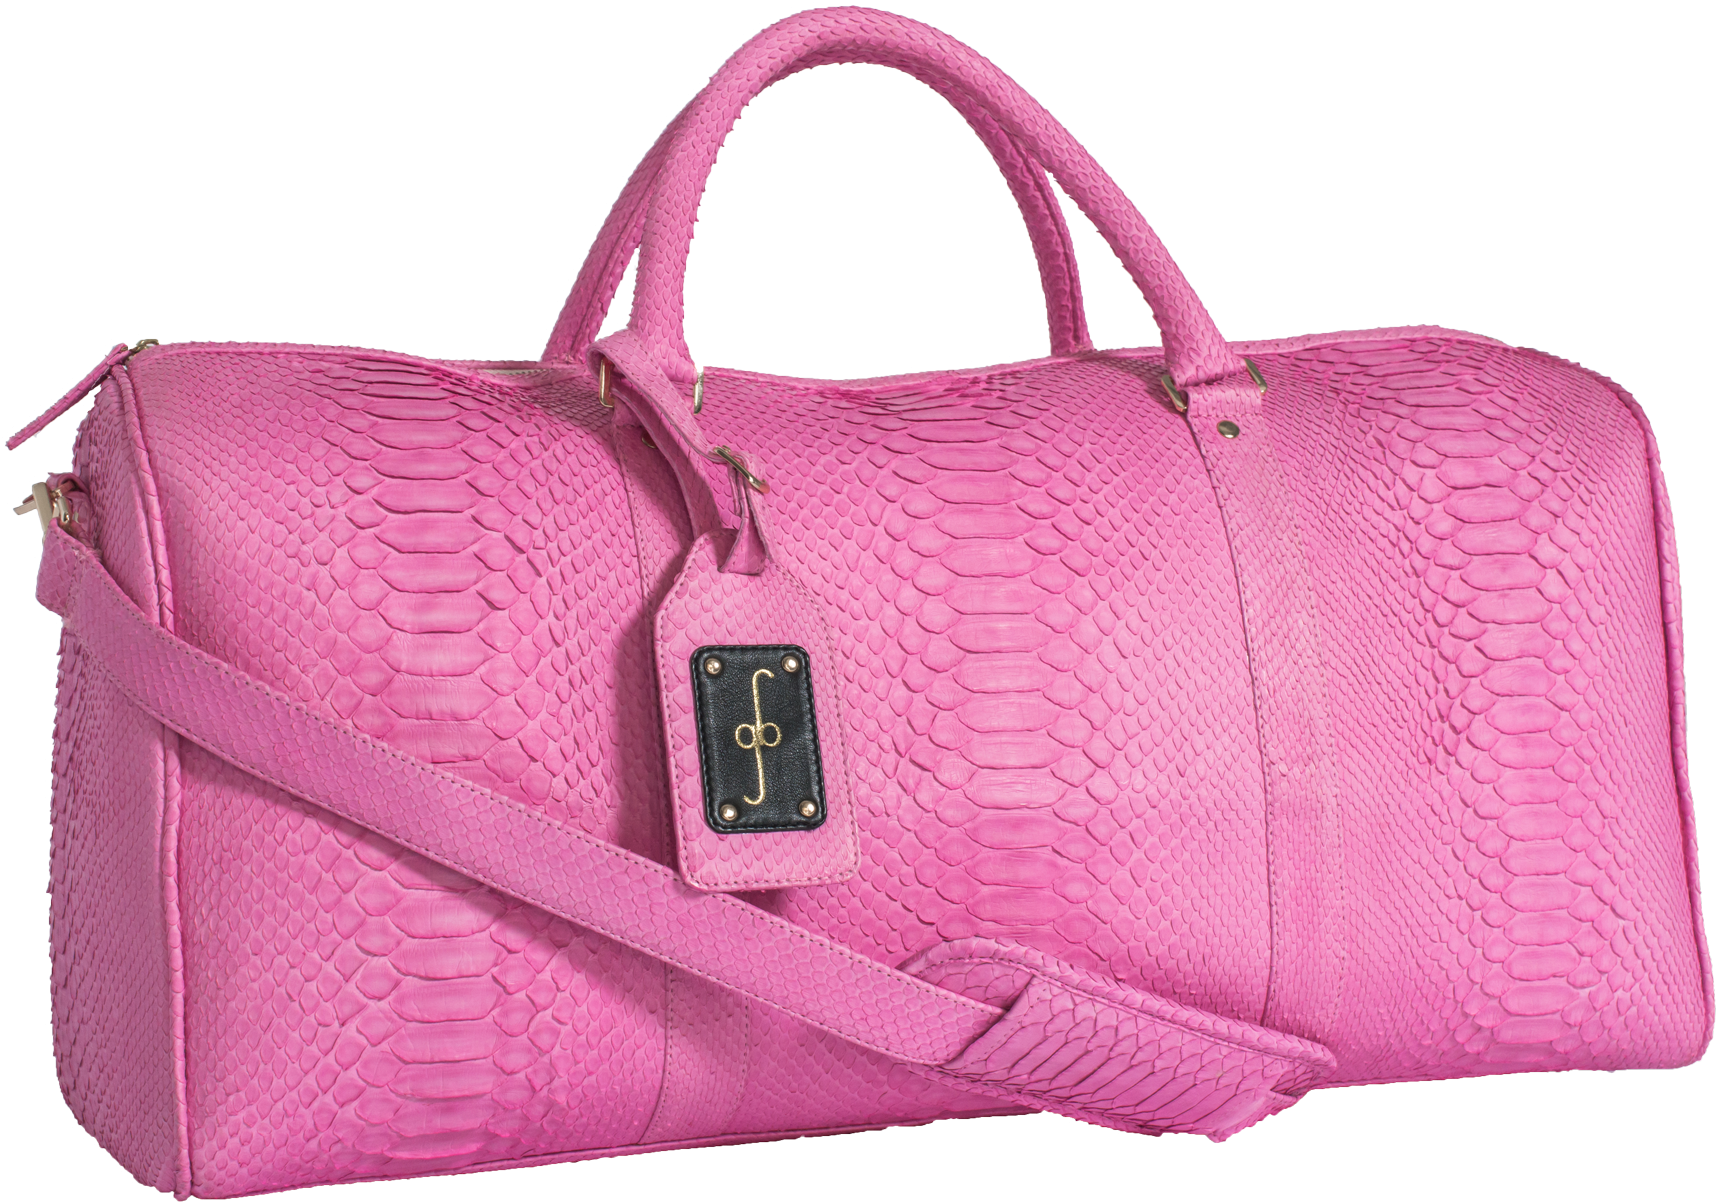 Pink Handbag PNG Photos